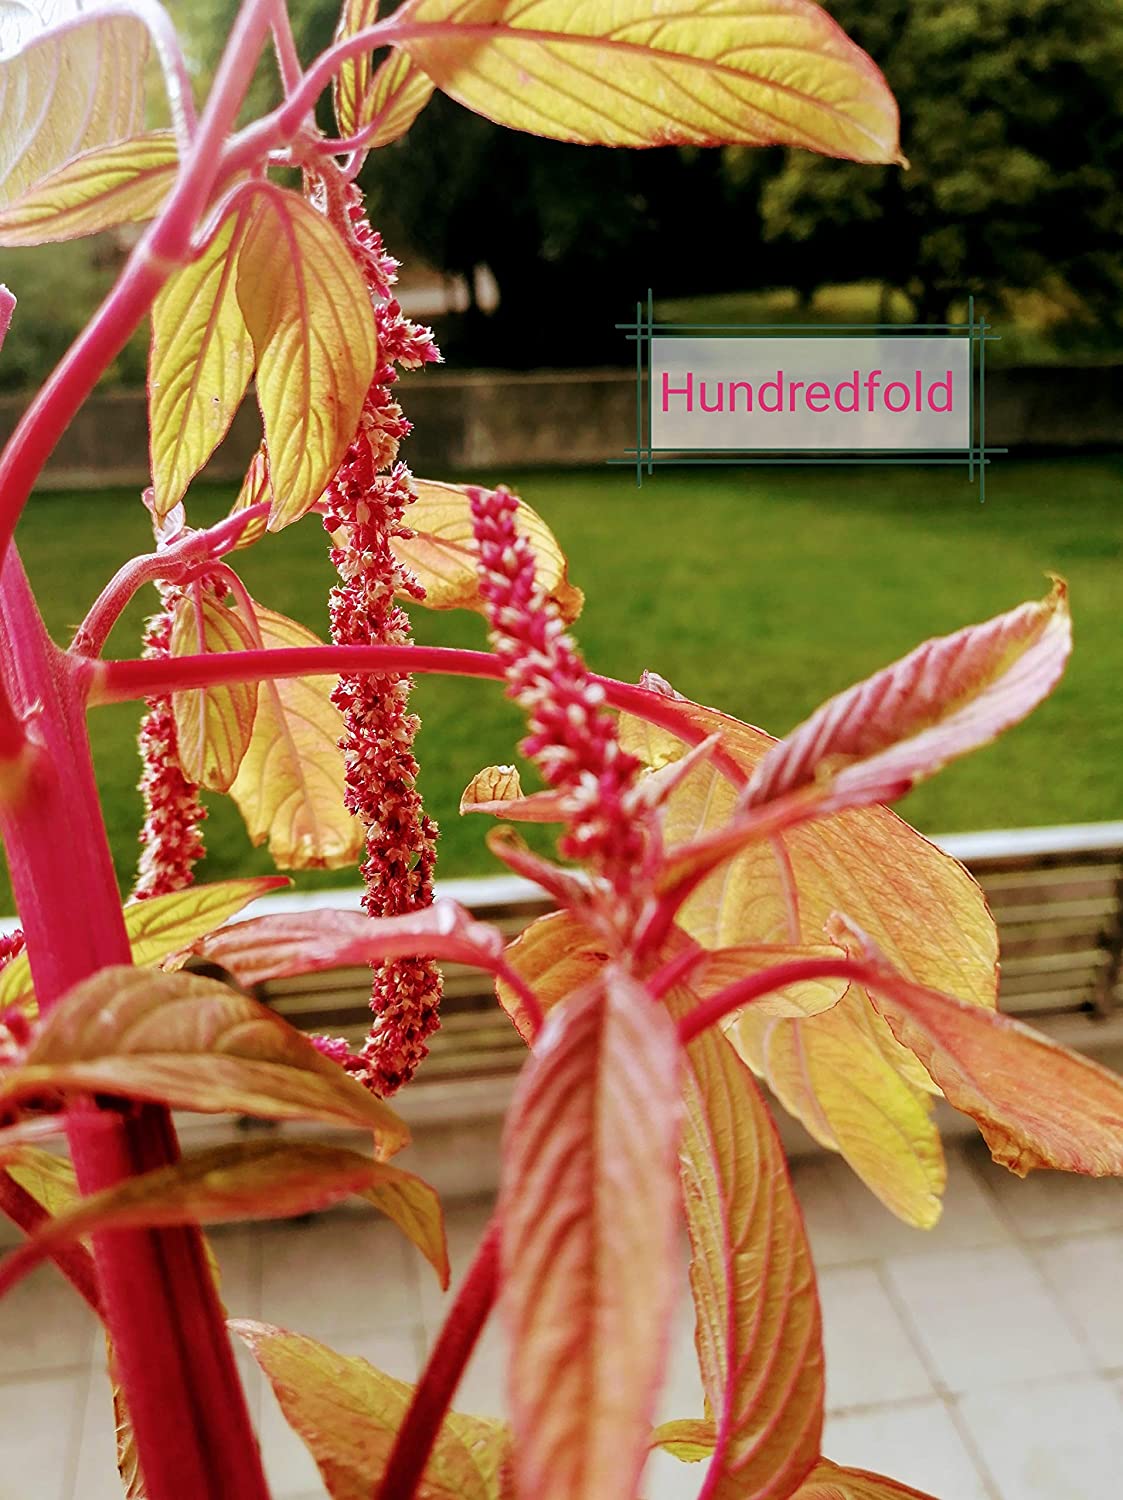 Hundredfold Love Lies Bleeding Amaranth 1000 Seeds – Amaranthus caudatus, Heirloom Tassel Flower